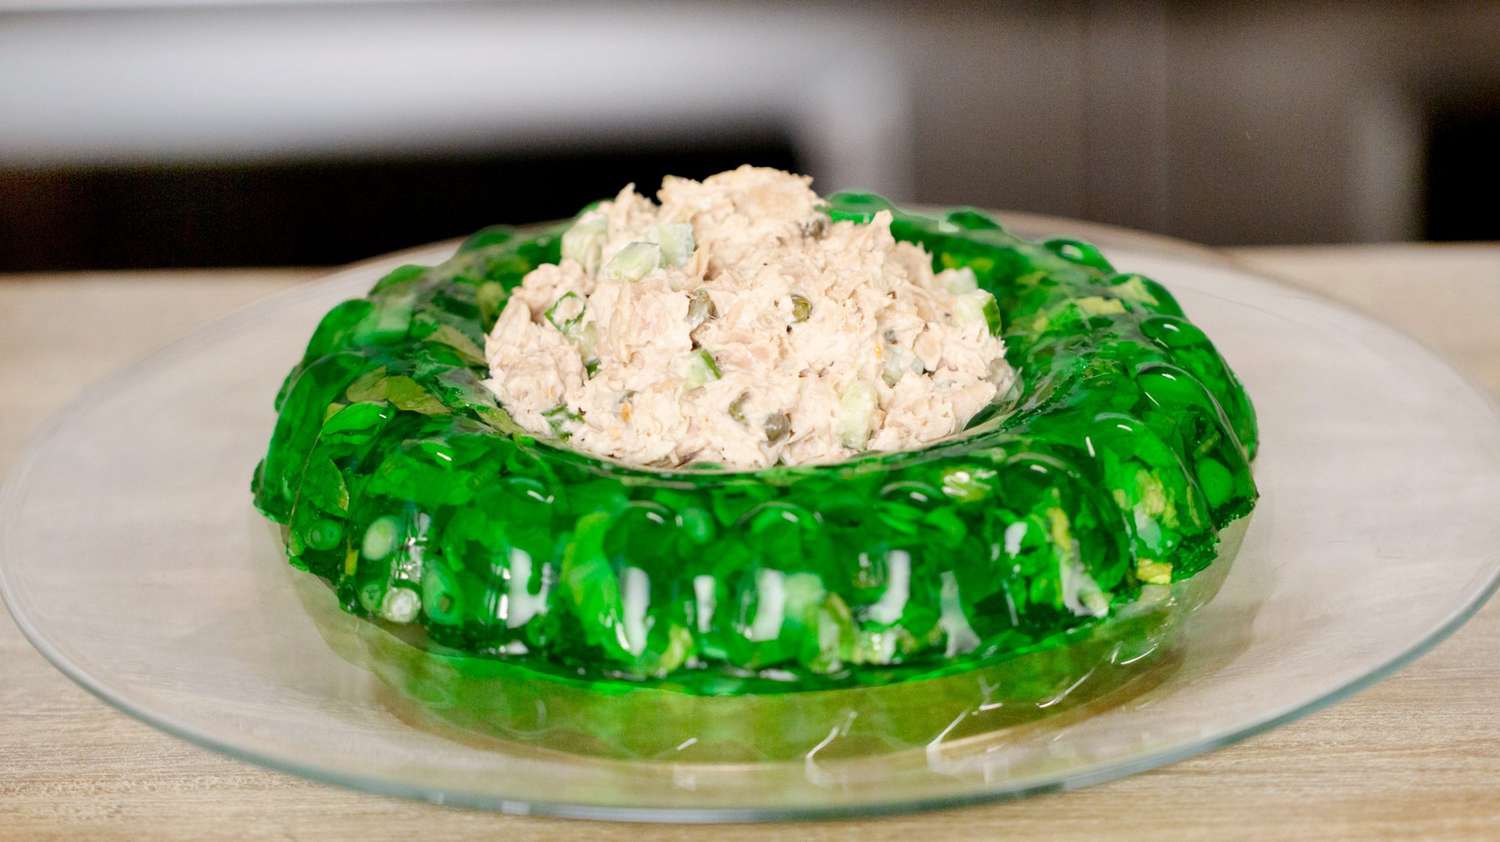 green tuna jello salad